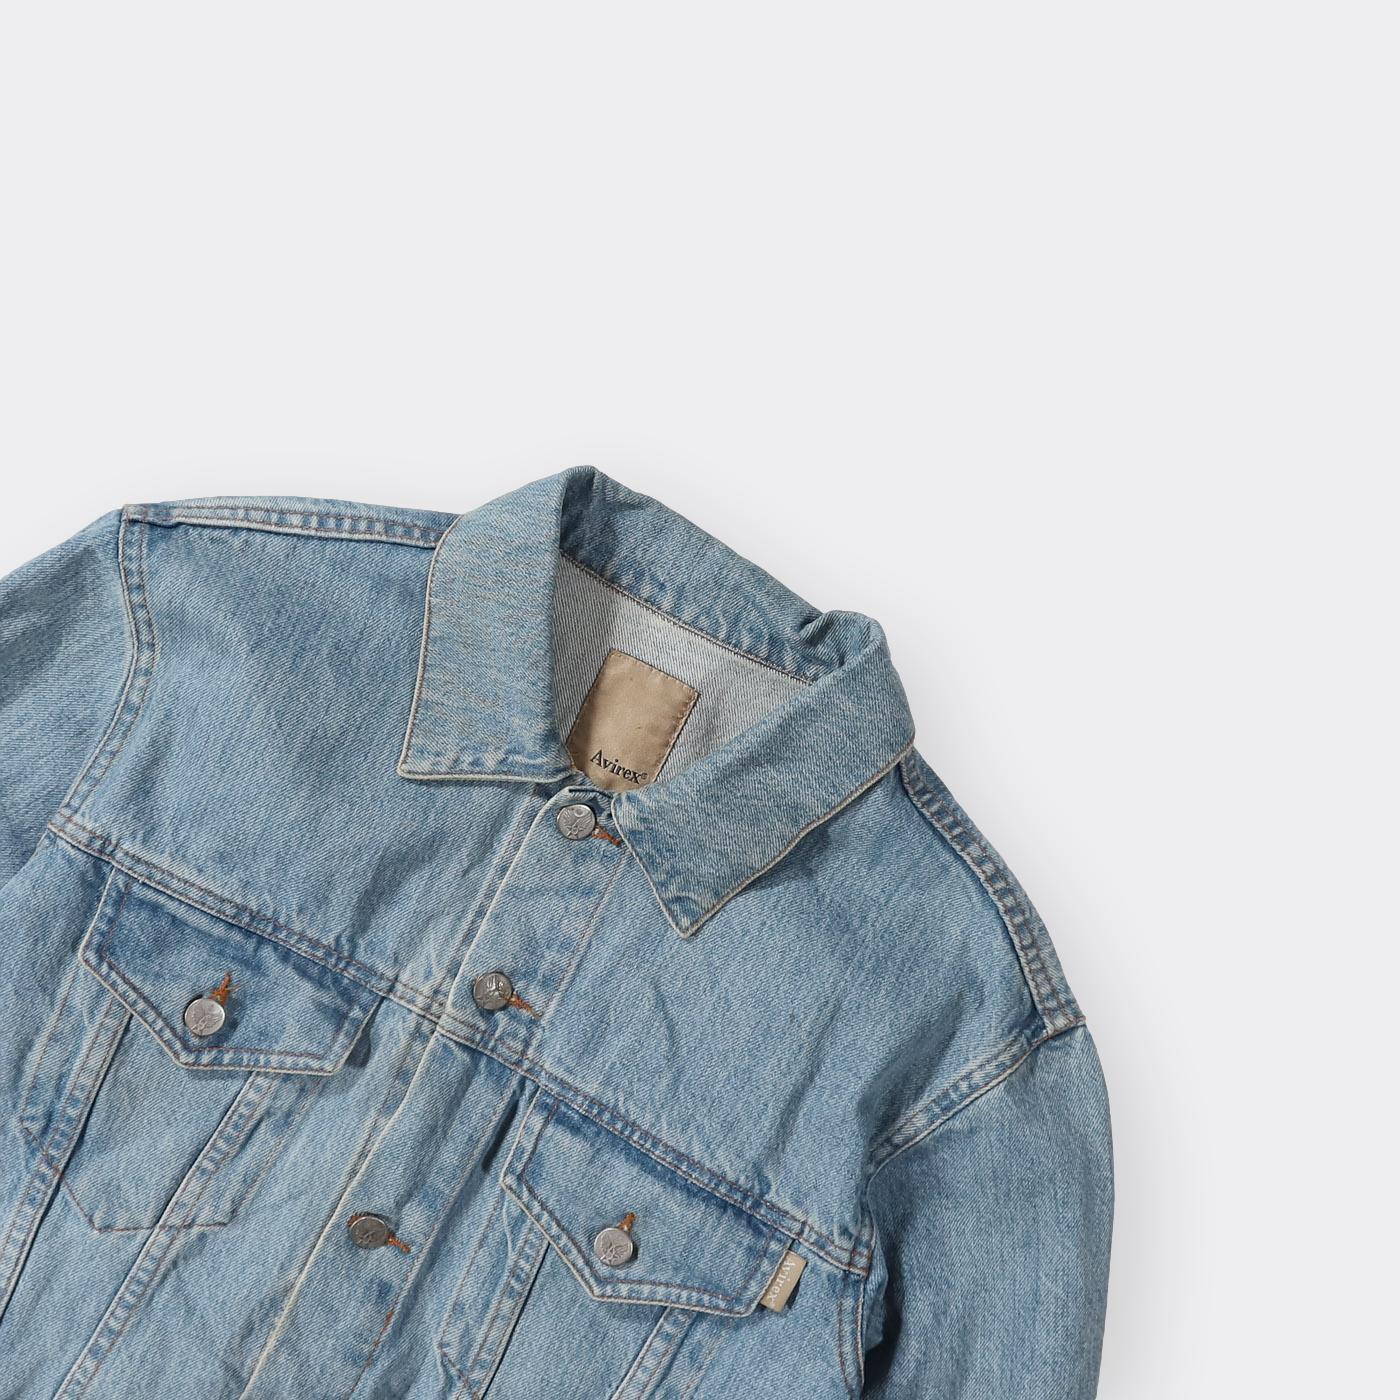 Avirex Vintage Denim Jacket - Small - Known Source